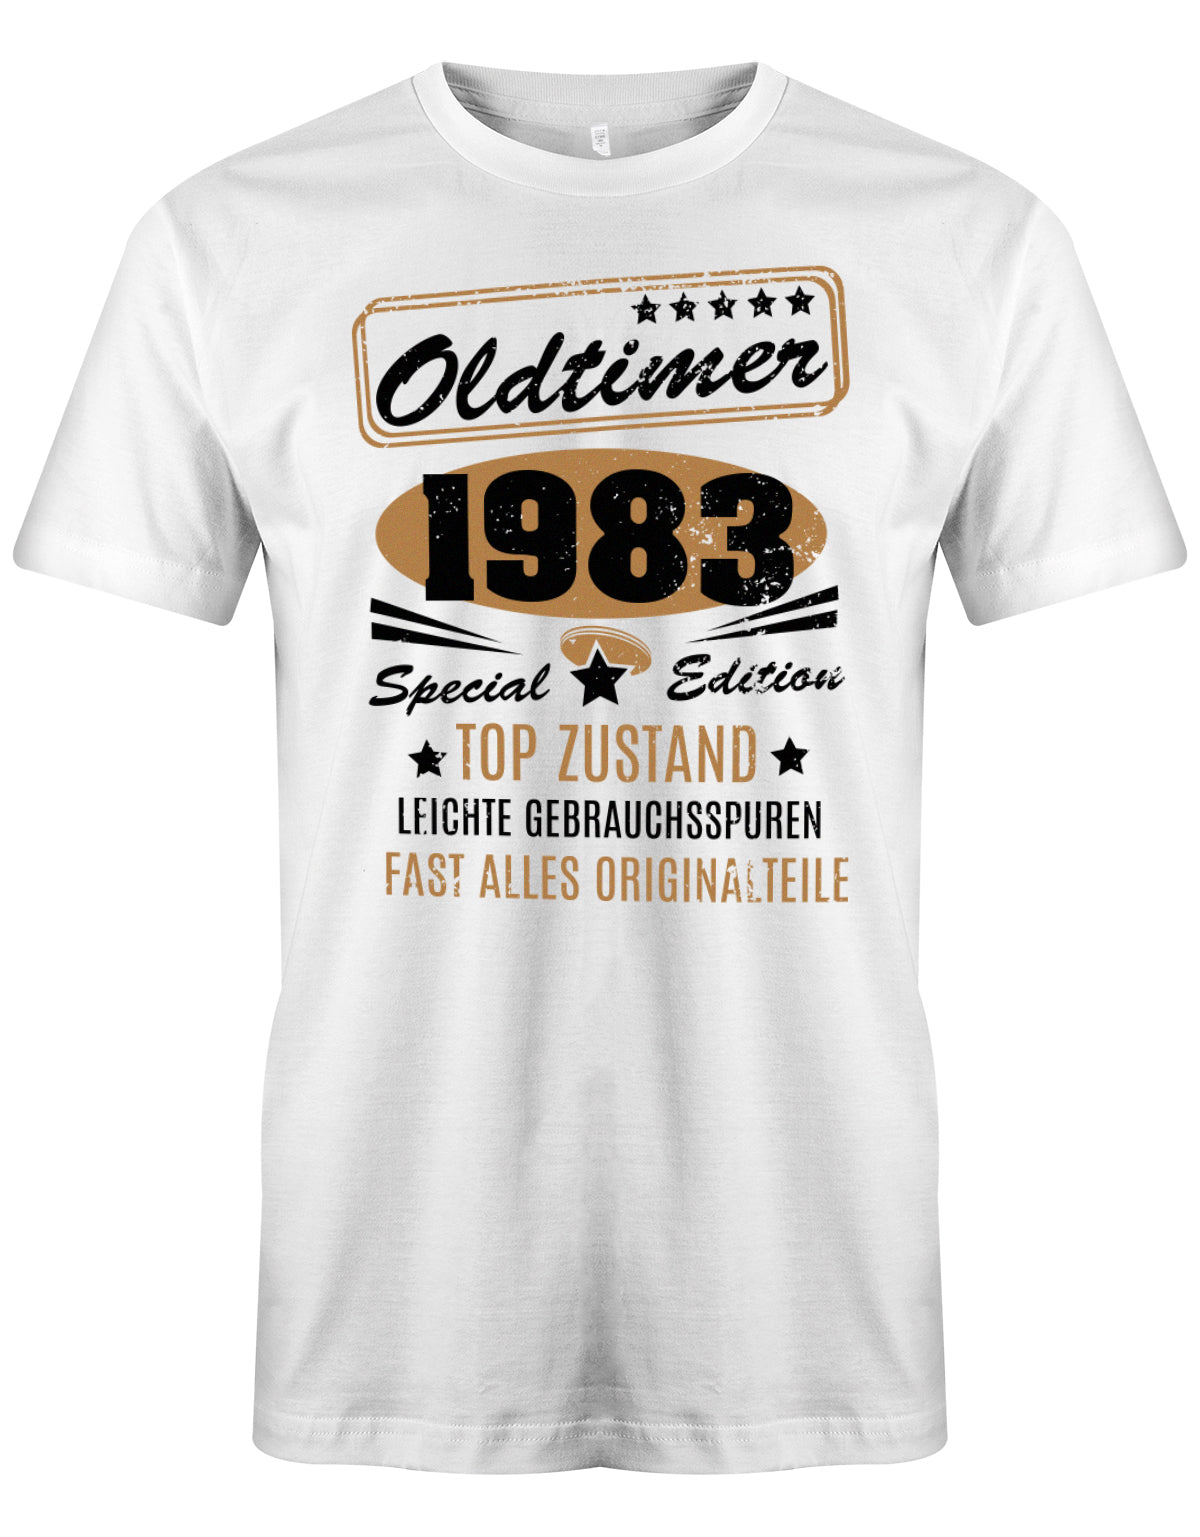 Oldtimer 1983 Special Edition Top Zustand - T-Shirt 40 Geburtstag Männer myShirtStore Weiss